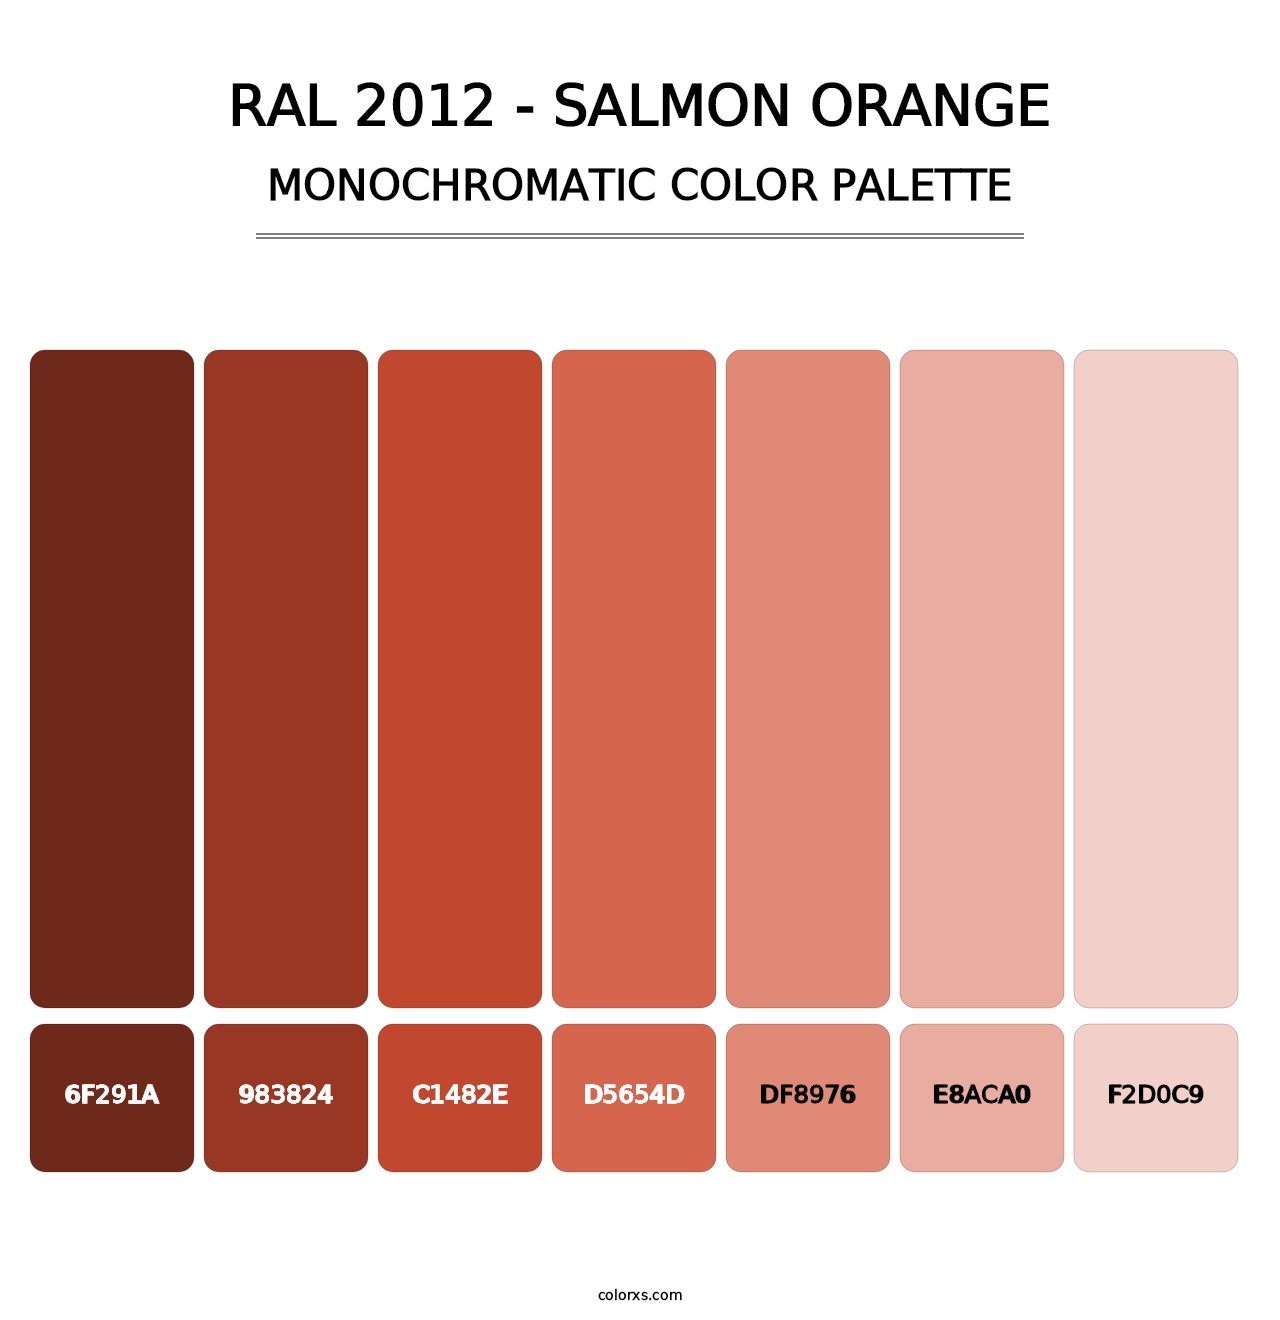 RAL 2012 - Salmon Orange - Monochromatic Color Palette